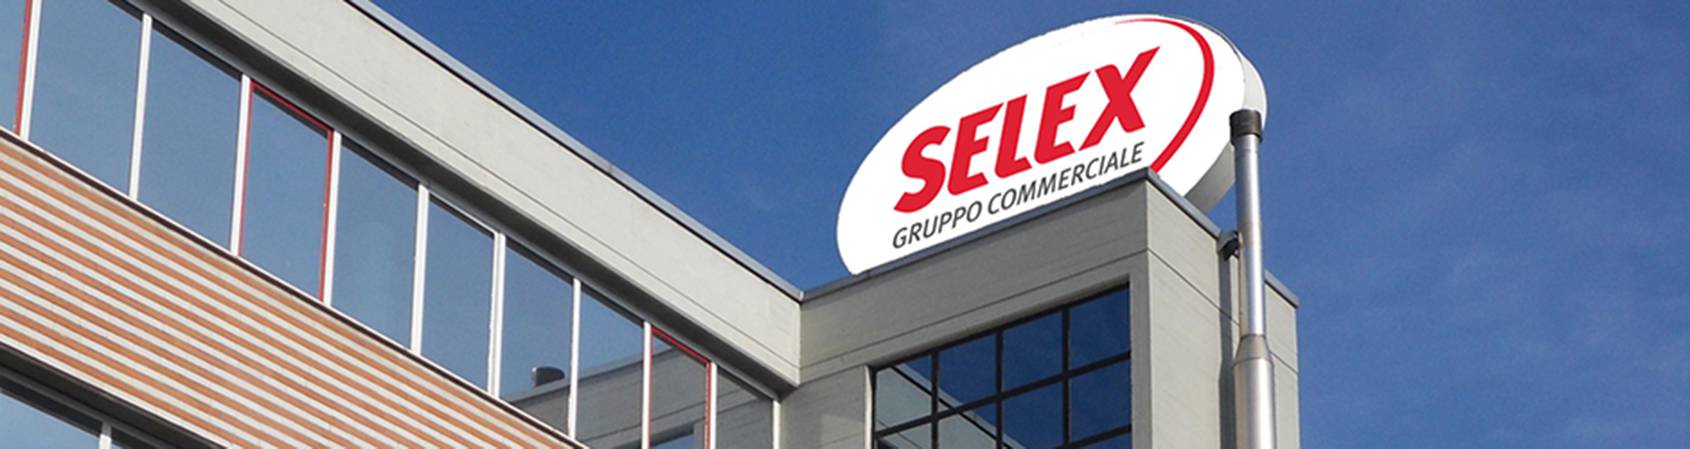 Gruppo Selex: “sconto extra del 10% sui buoni spesa distribuiti dai Comuni”